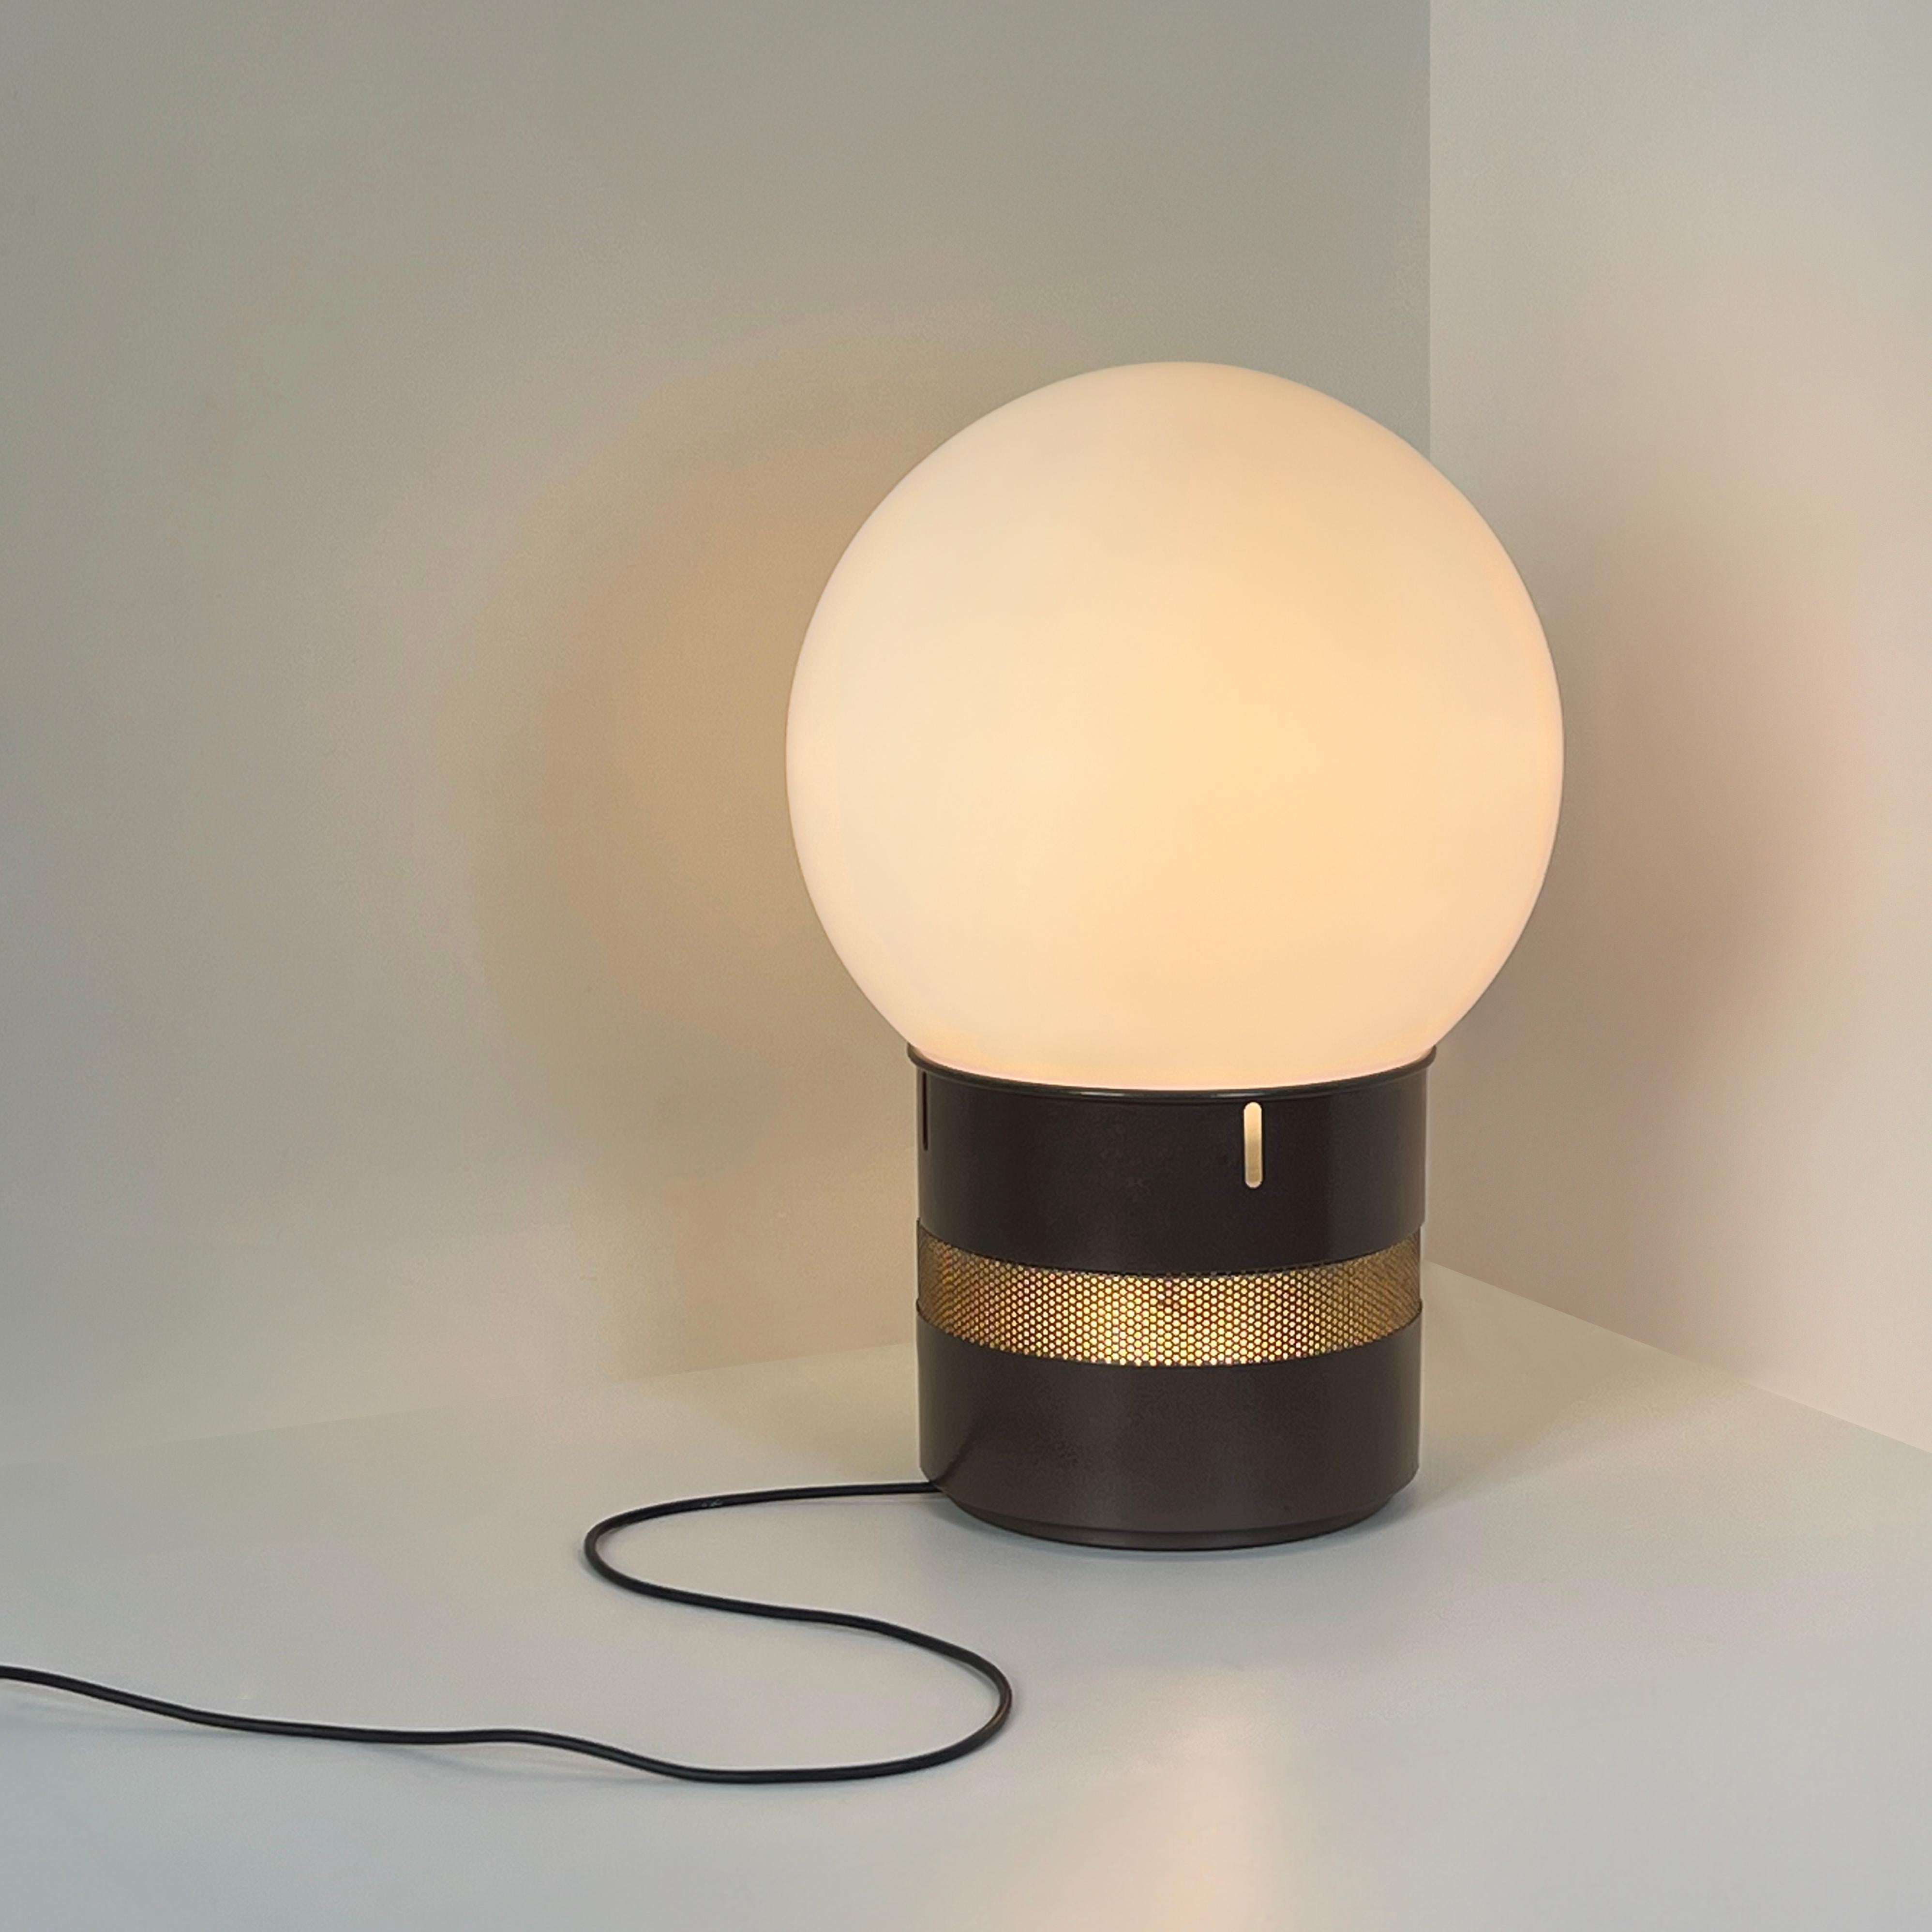 La lampe Mezzo Oracolo, chef-d'œuvre du design de Gae Aulenti pour Artemide dans les années 1970, est une incarnation étonnante des lignes épurées et de l'élégance intemporelle.

Cette lampe est définie par une sphère de verre captivante, qui